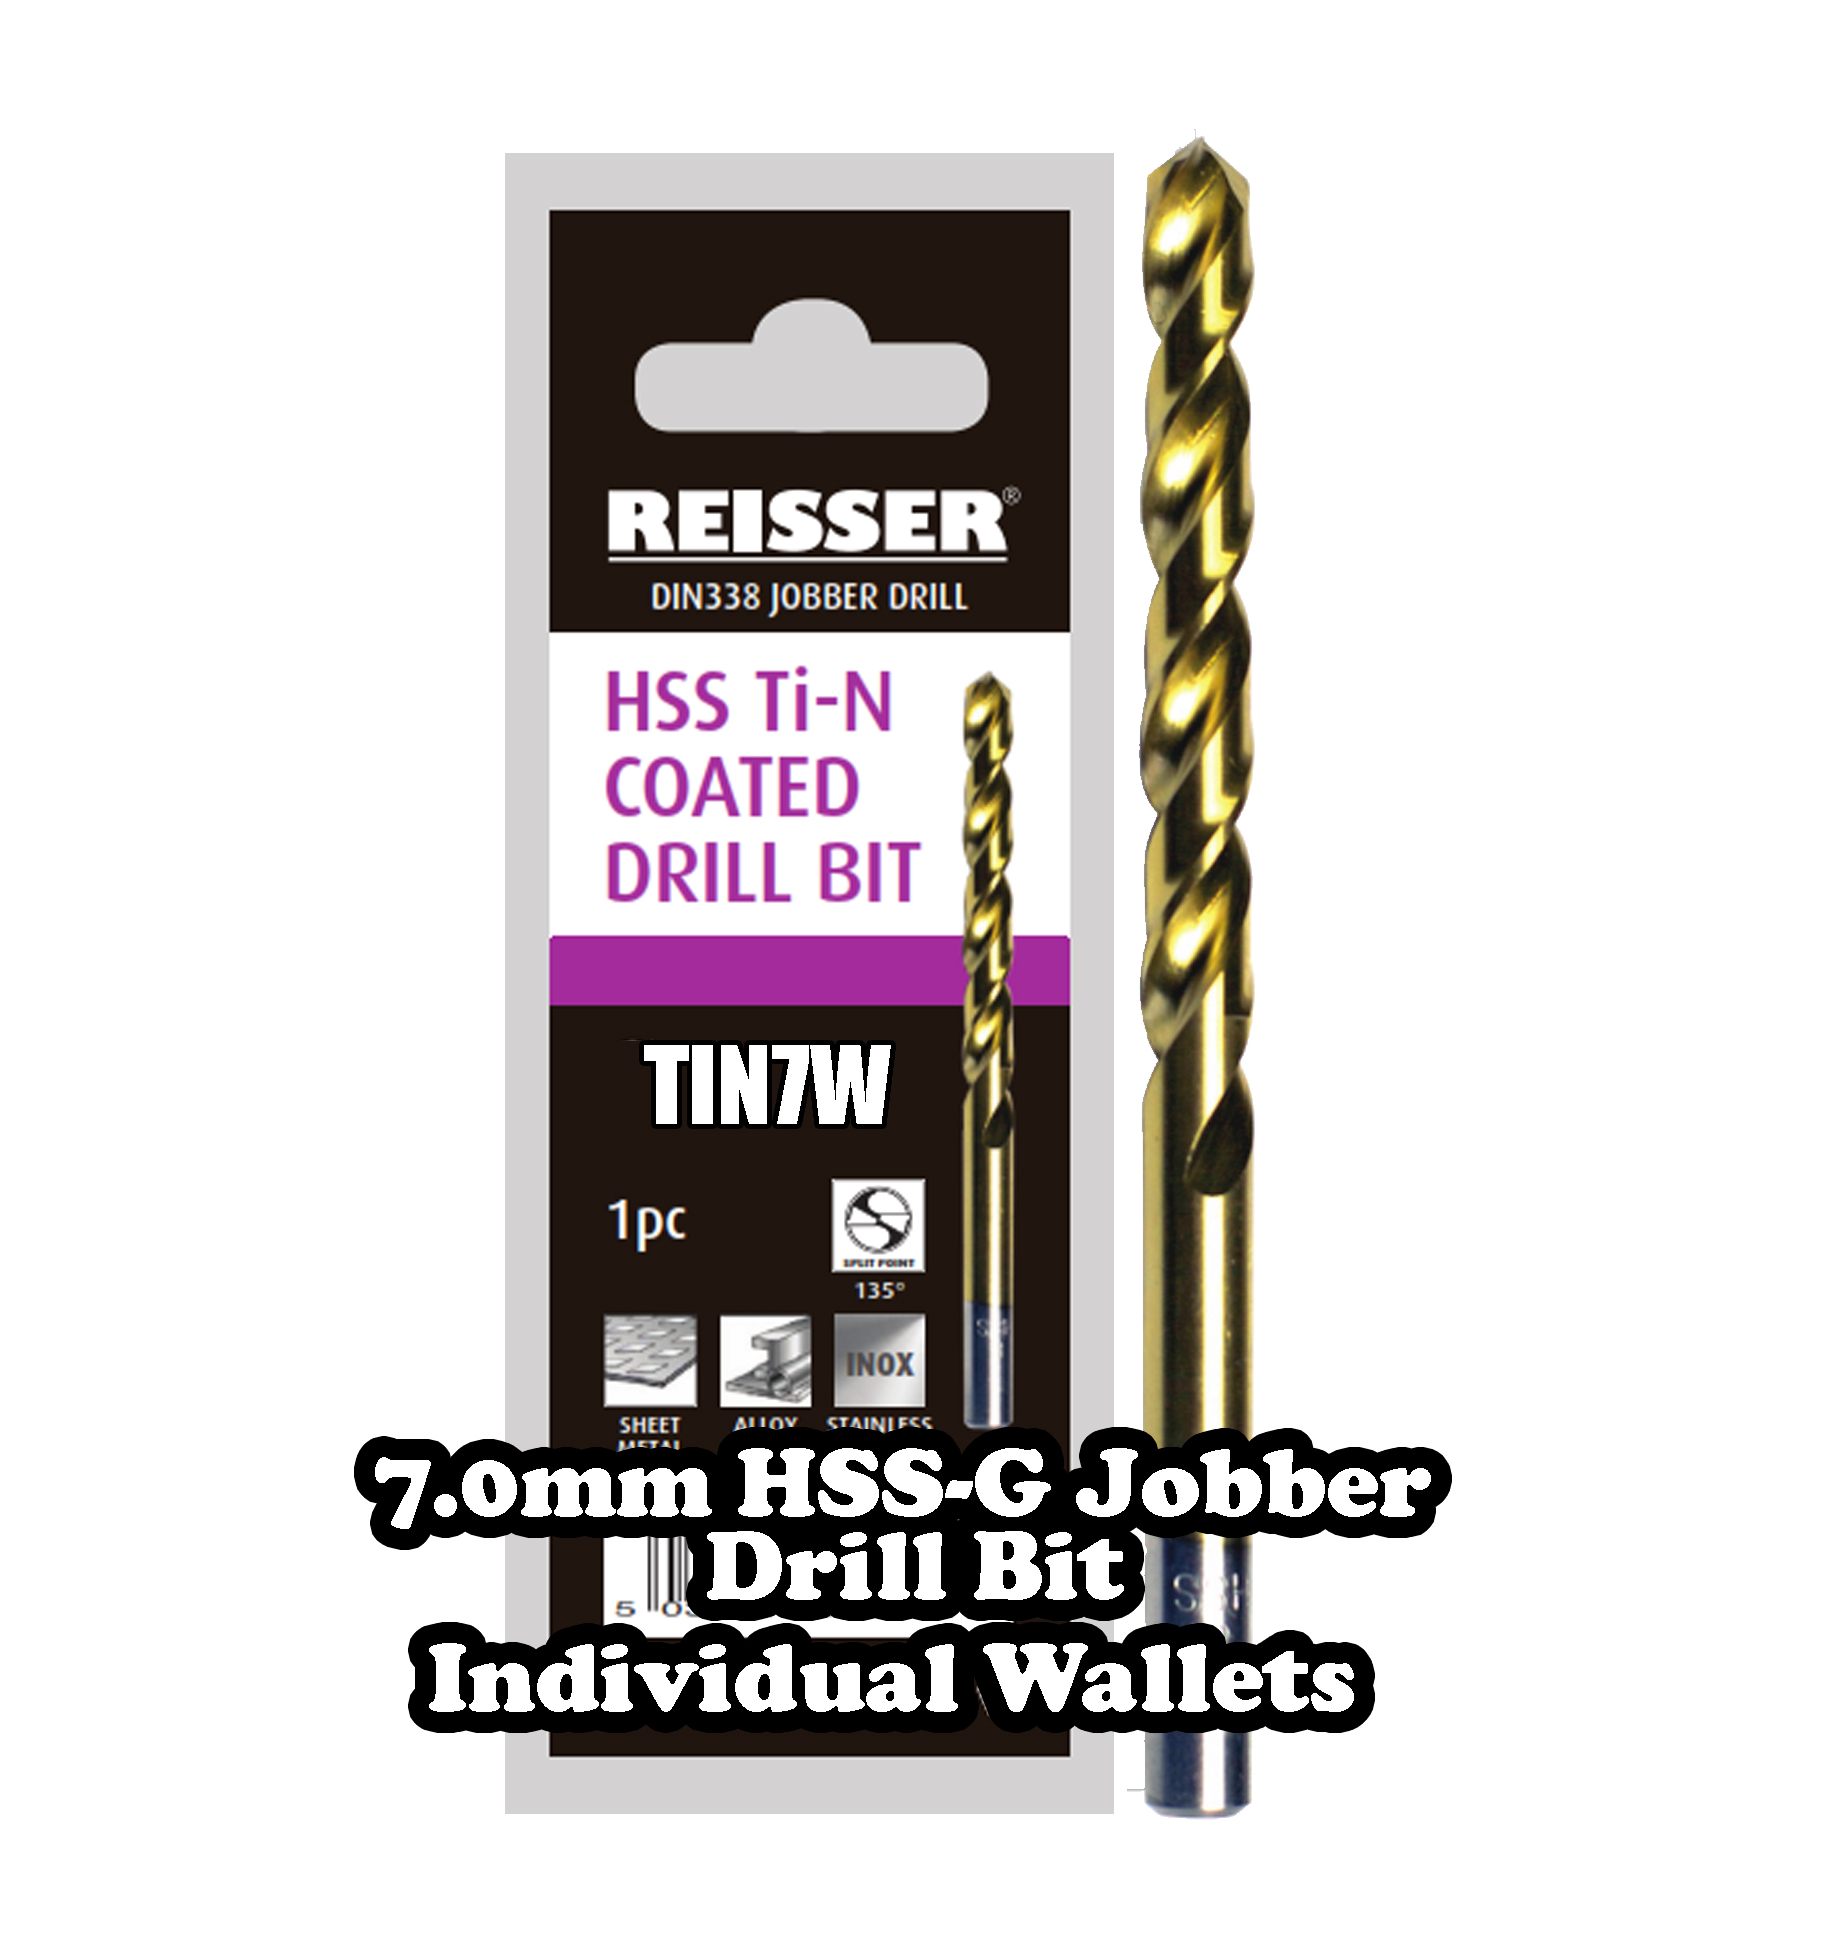 7.0mm HSS Jobber Drill Bit (SINGLE WALLET)